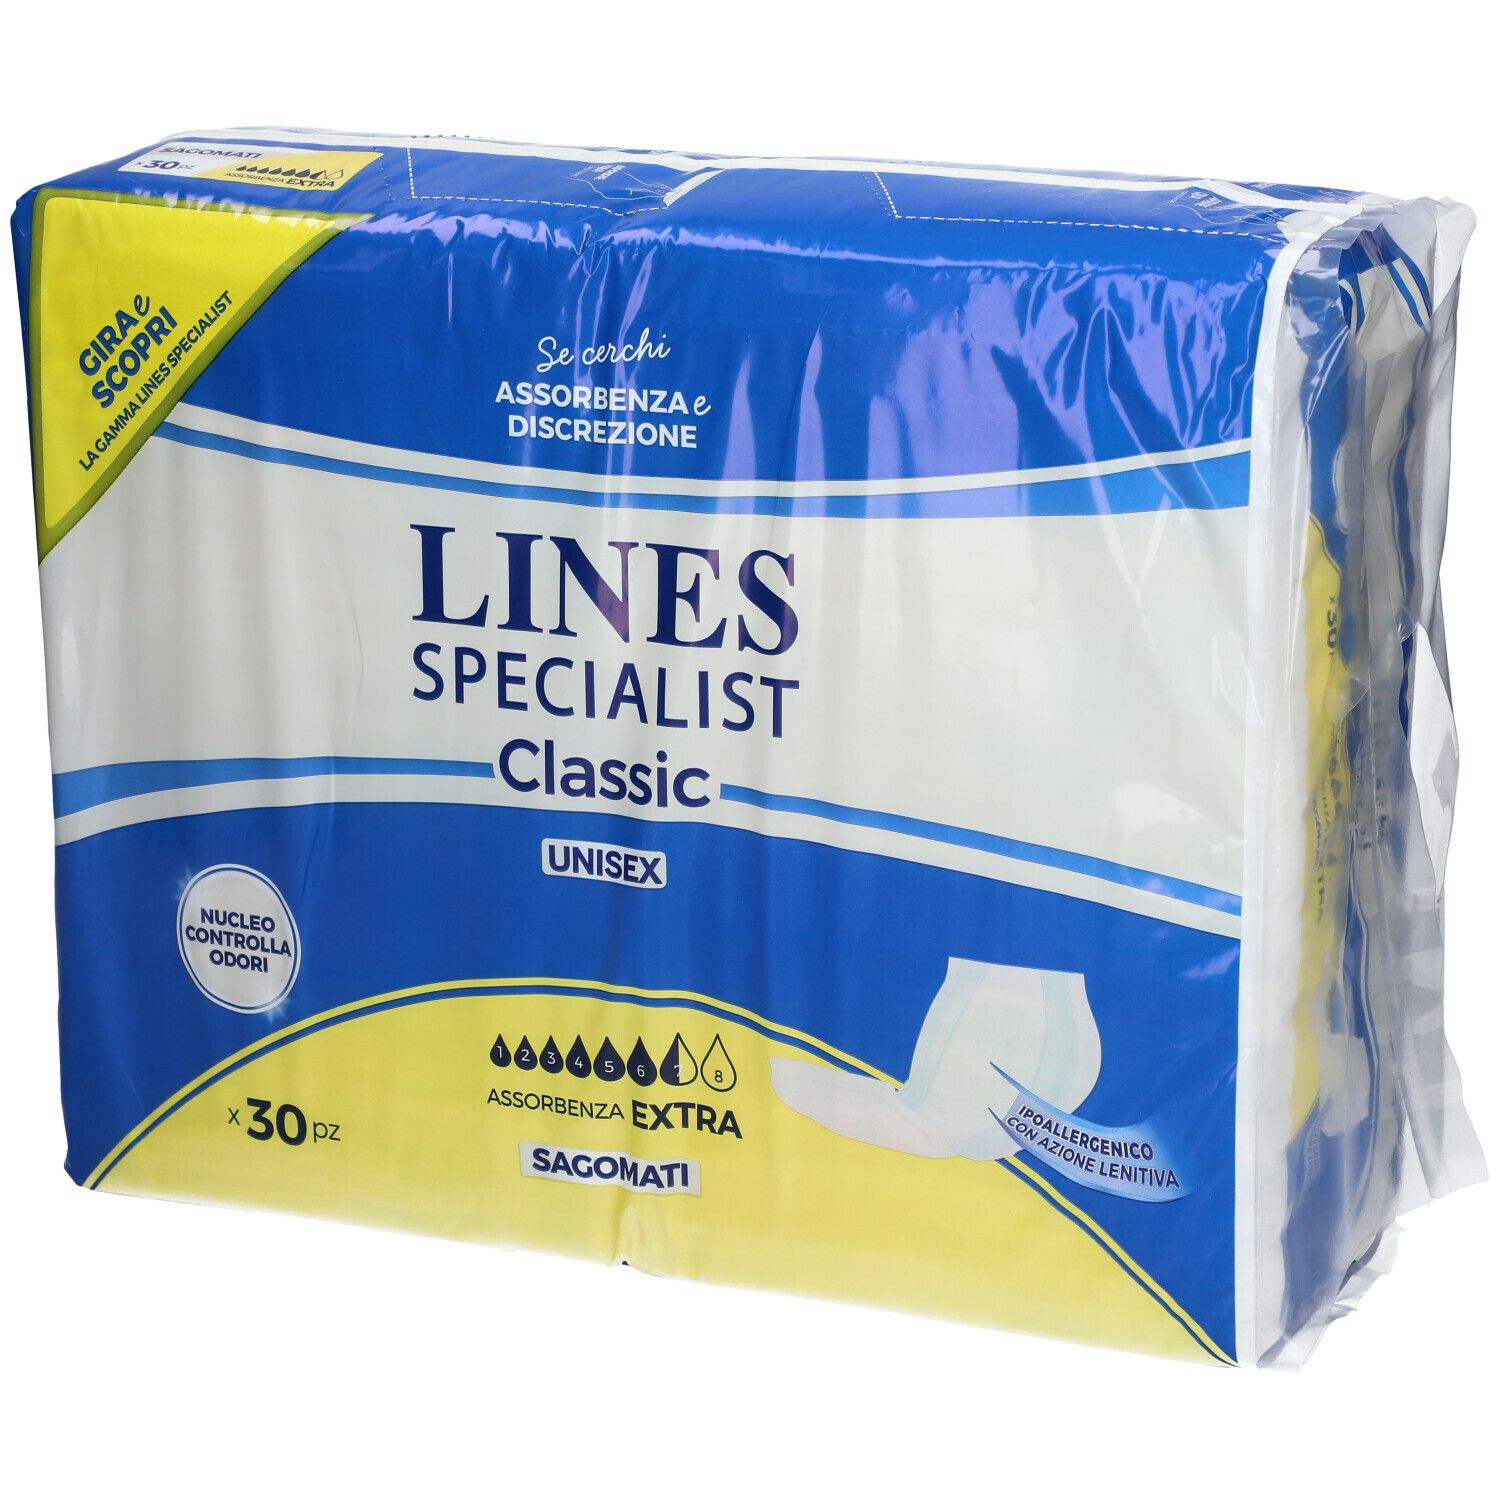 LINES SPECIALIST Classic Unisex Sagomati 30 pz